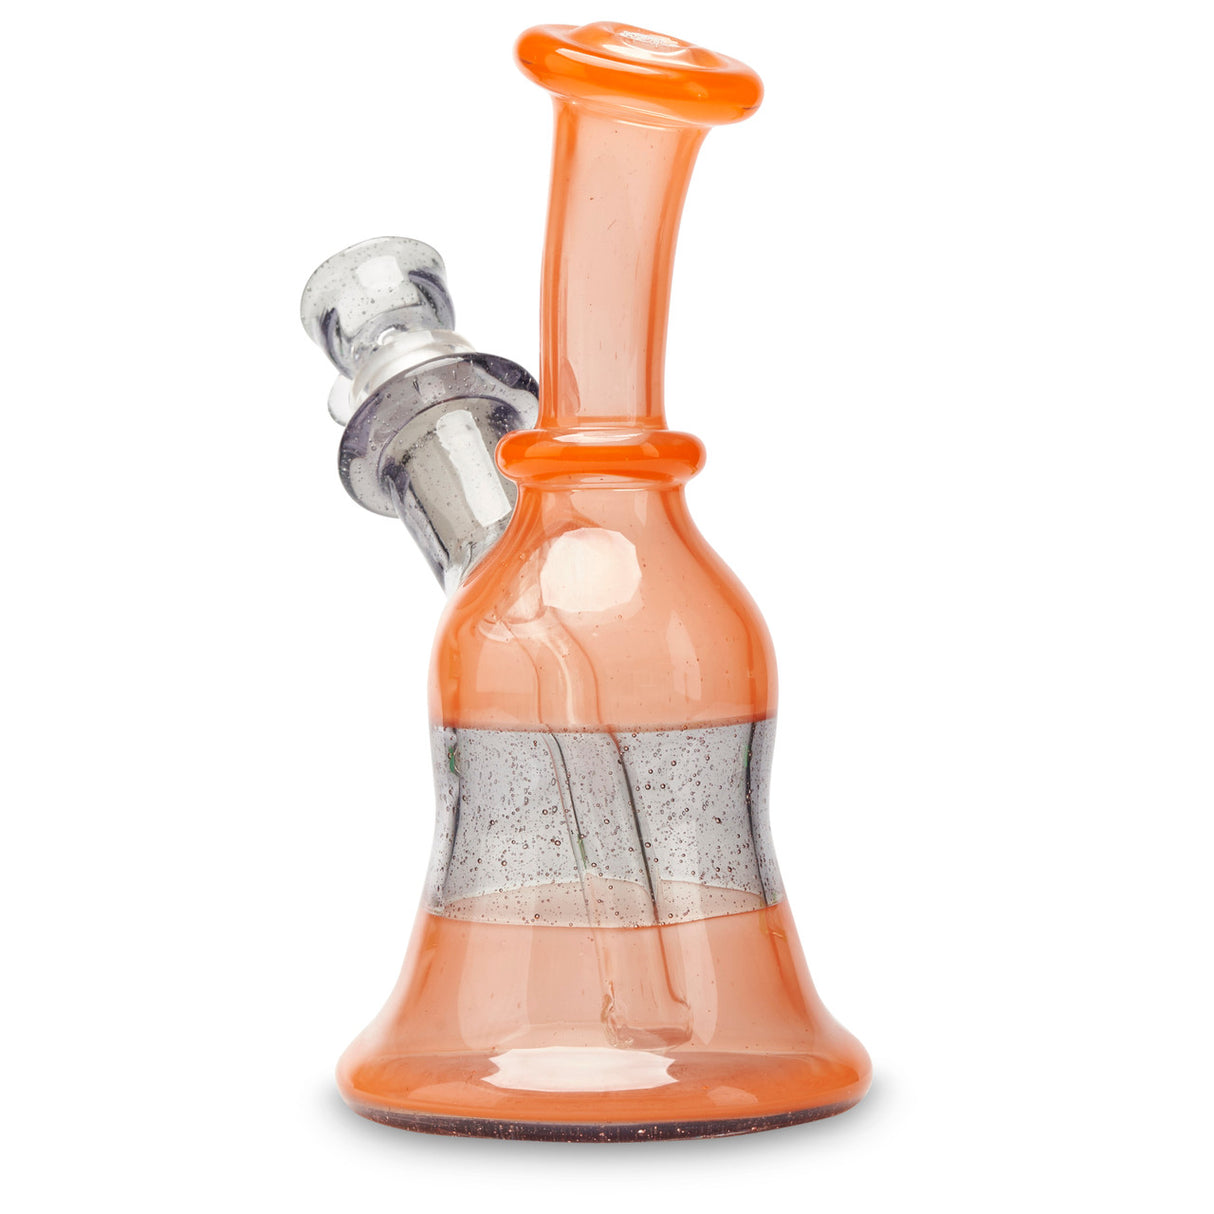 clc glass mini tube orange and purple colored pipe online in stock